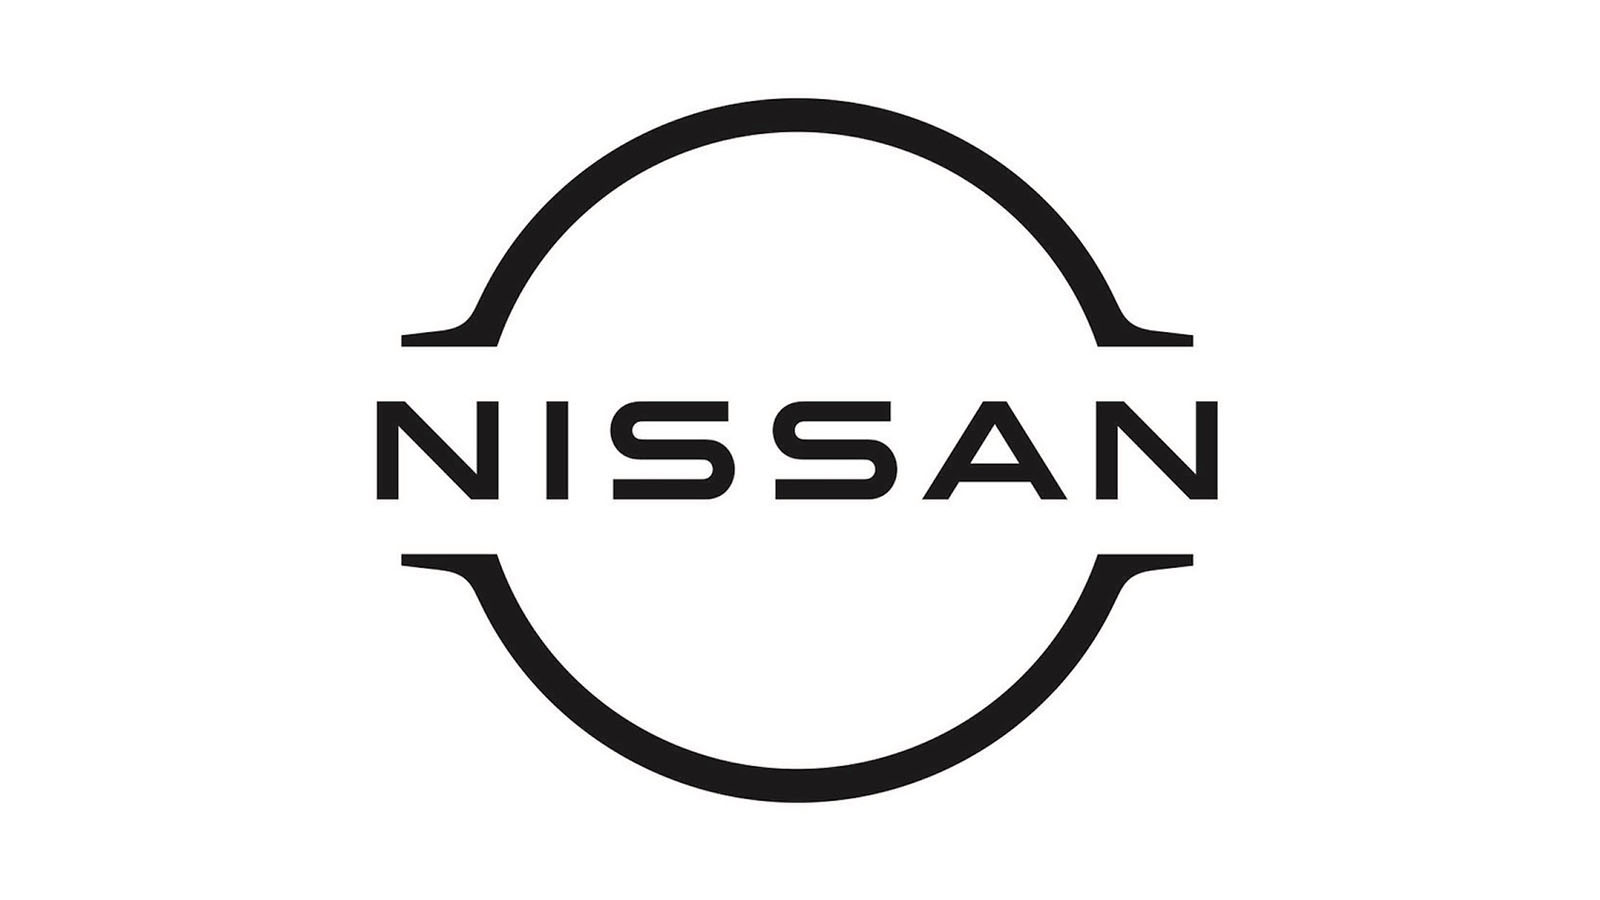 Nissan Leaf Concept